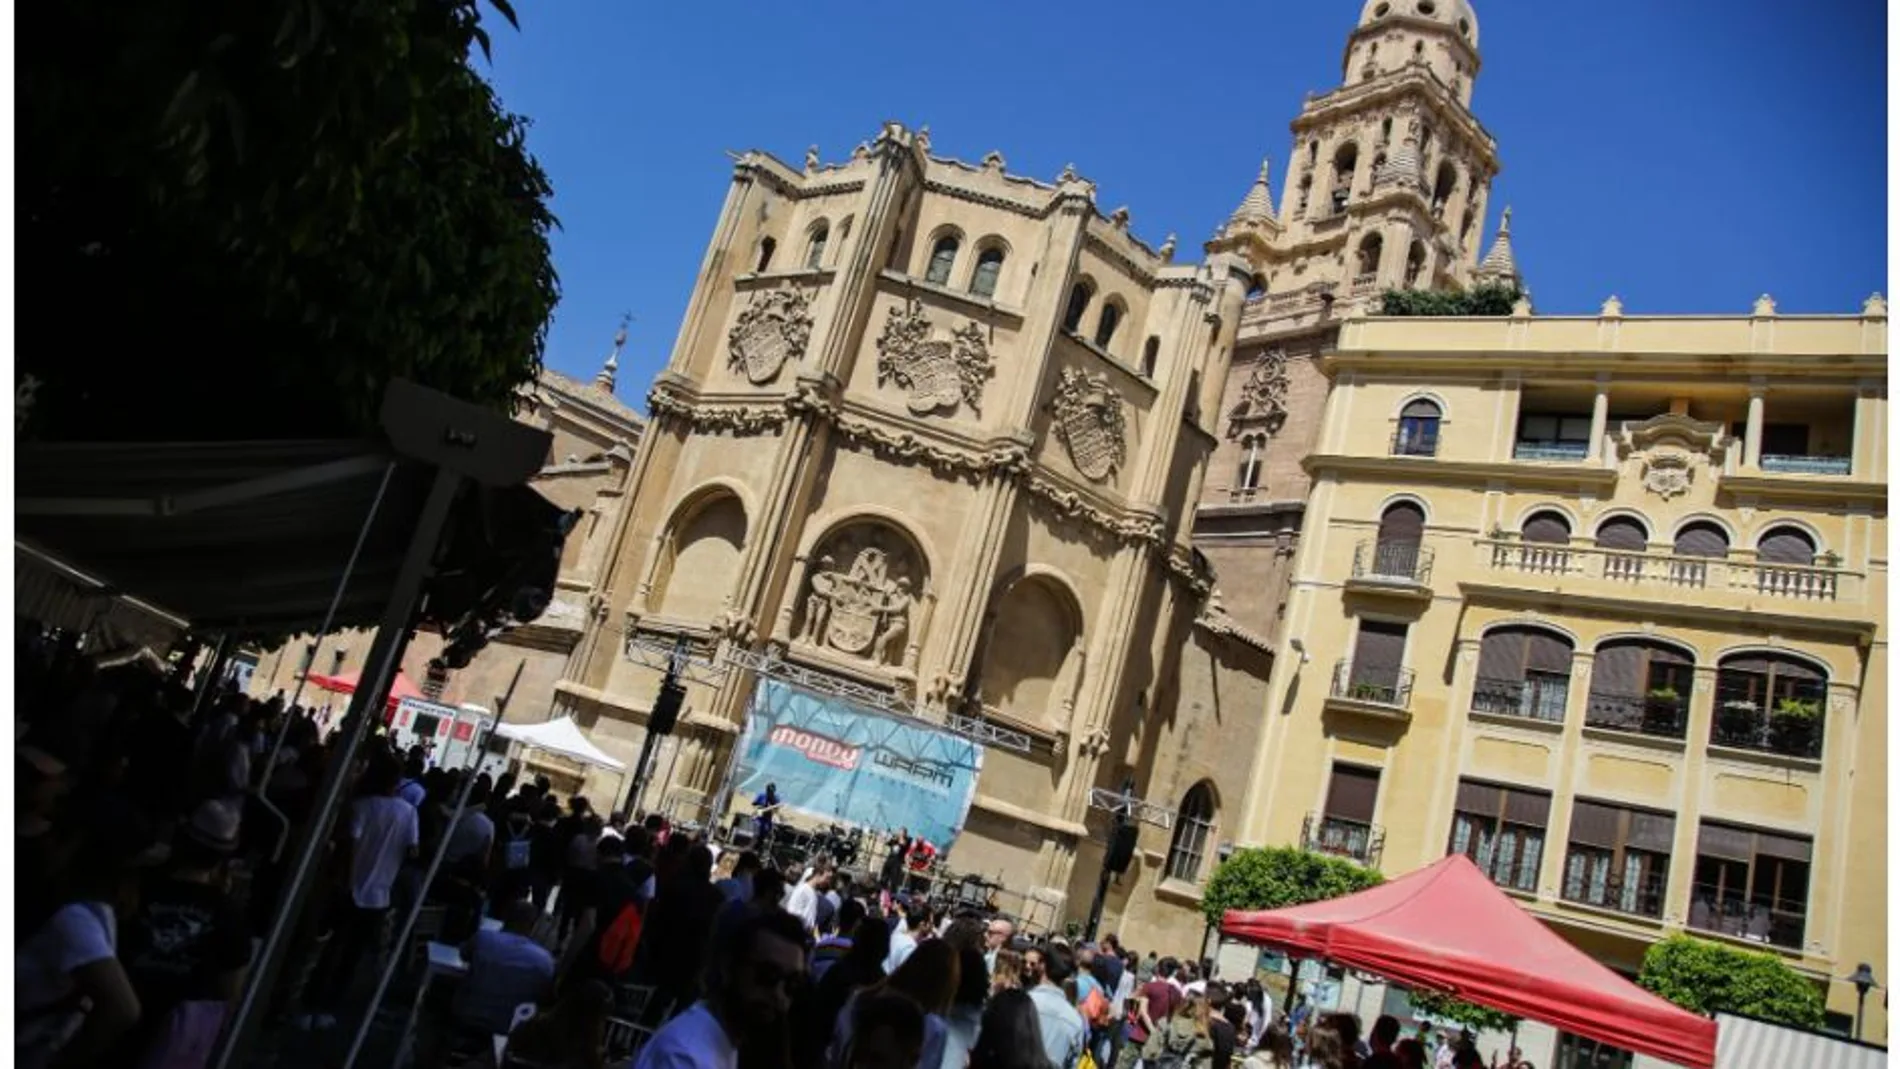 La ciudad de Murcia se llena de conciertos con el ciclo "Somos Murcia"